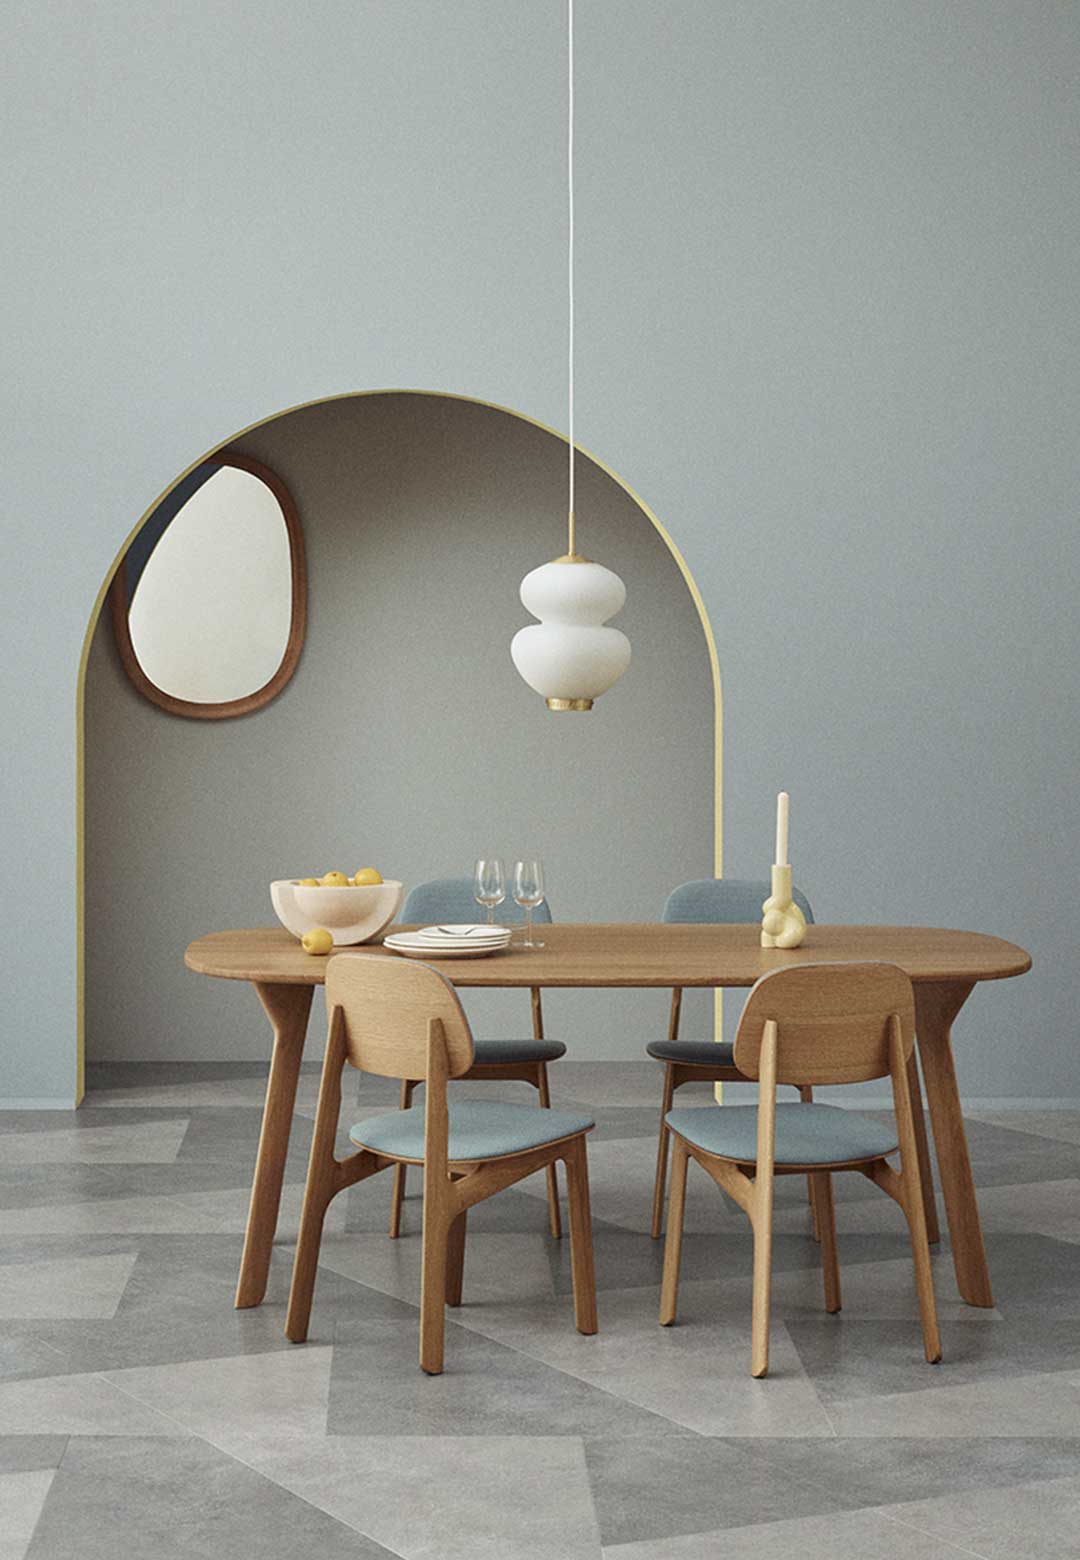 S&O DESIGN x Isamiya launch Toe Furniture collection